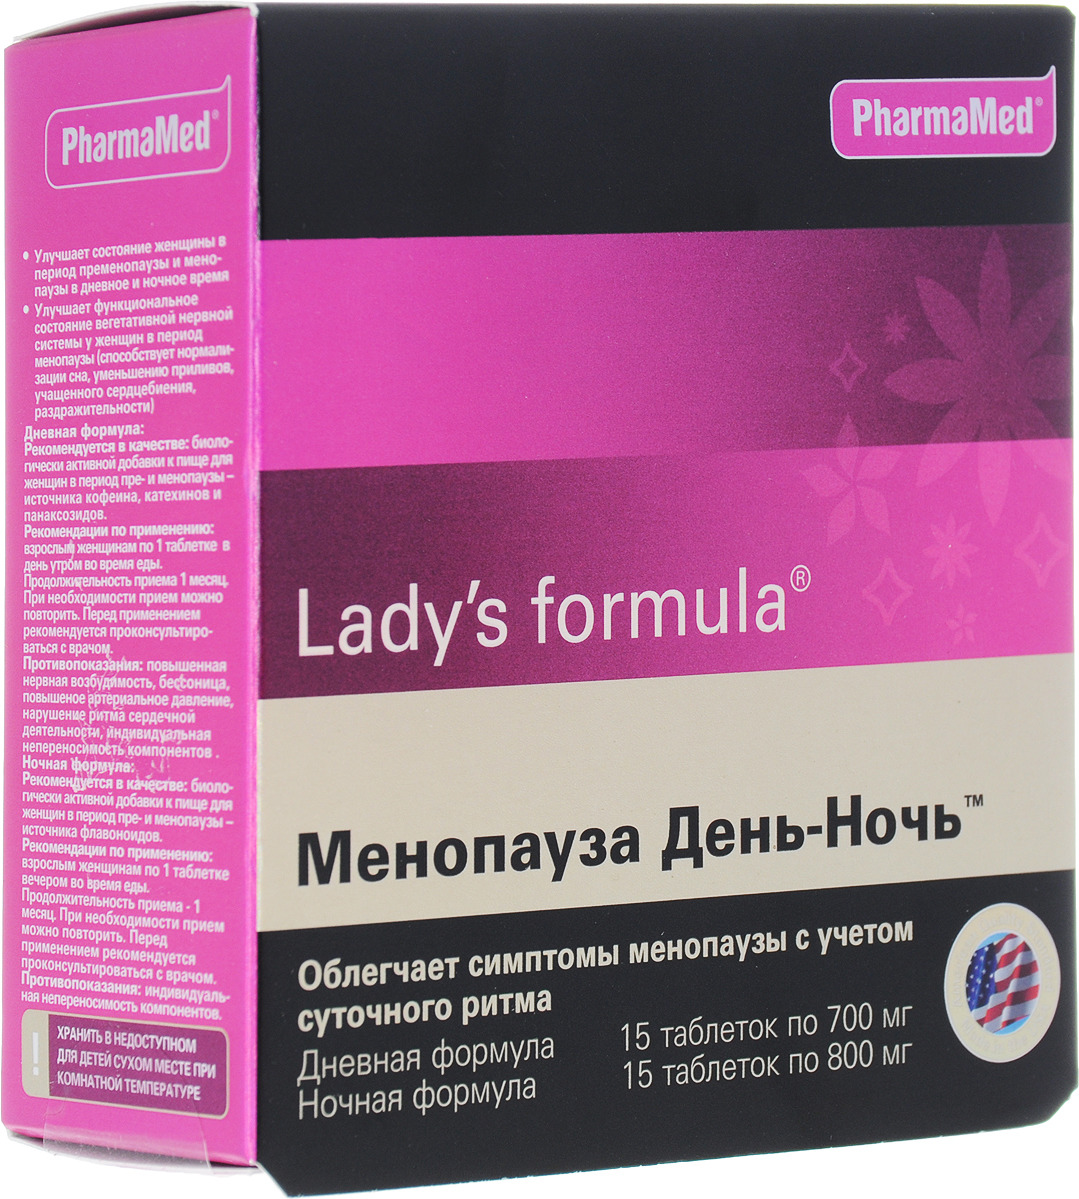 Менопауза таблетки инструкция по применению. Витамины ледис формула менопауза усиленная. Американские витамины для женщин ледис формула. Менопауза ледис формула таблетки. Витамины ледис формула при менопаузе.